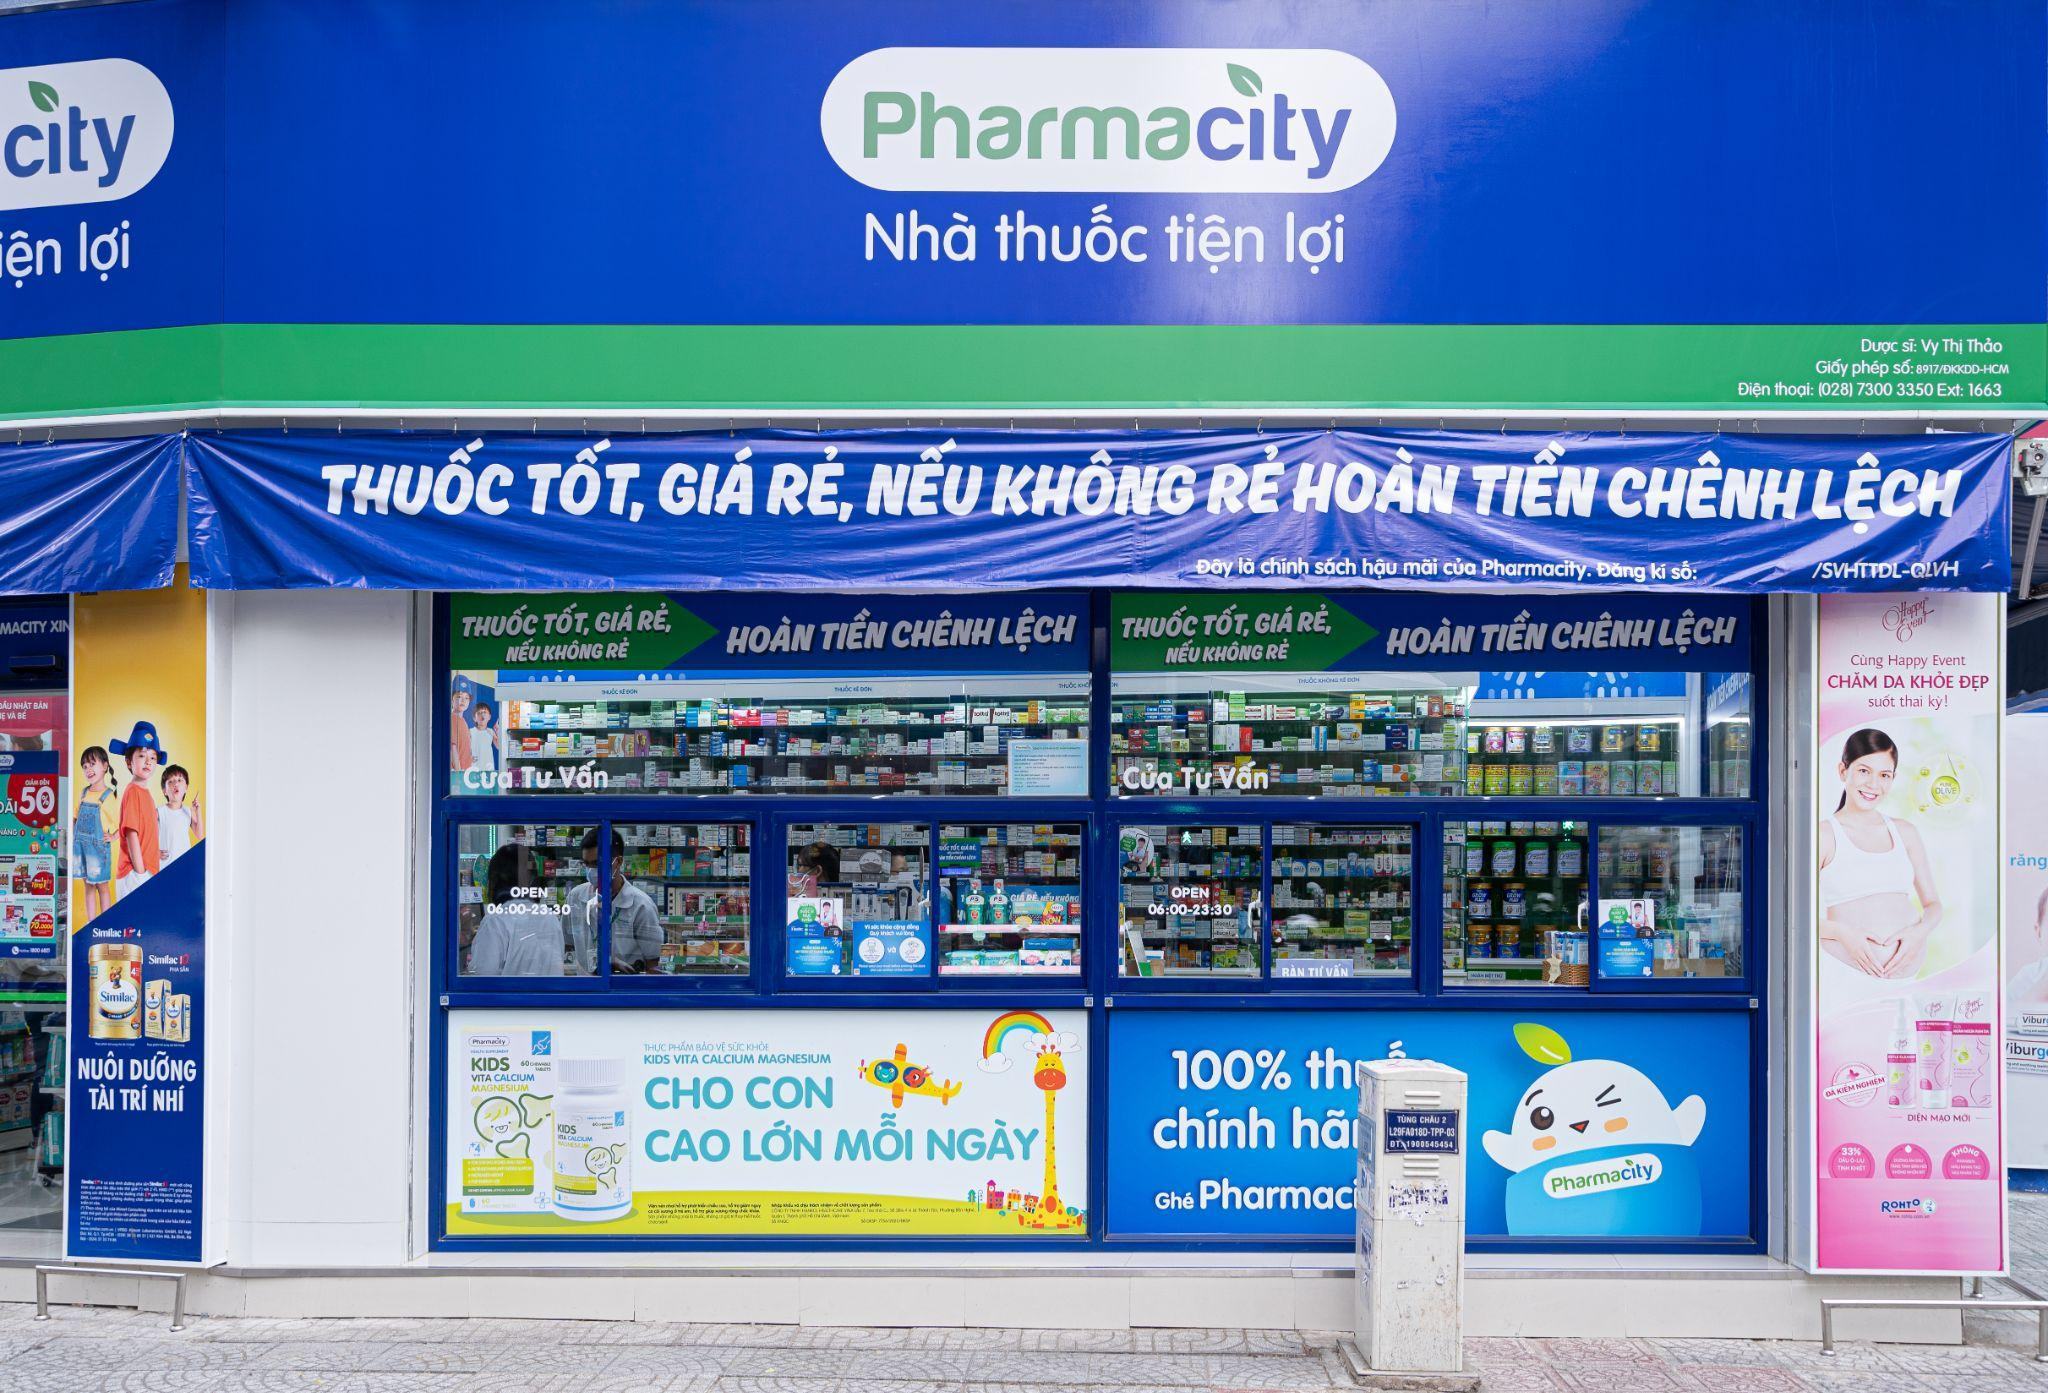 Mẫu biển hiệu nhà thuốc Pharmacity